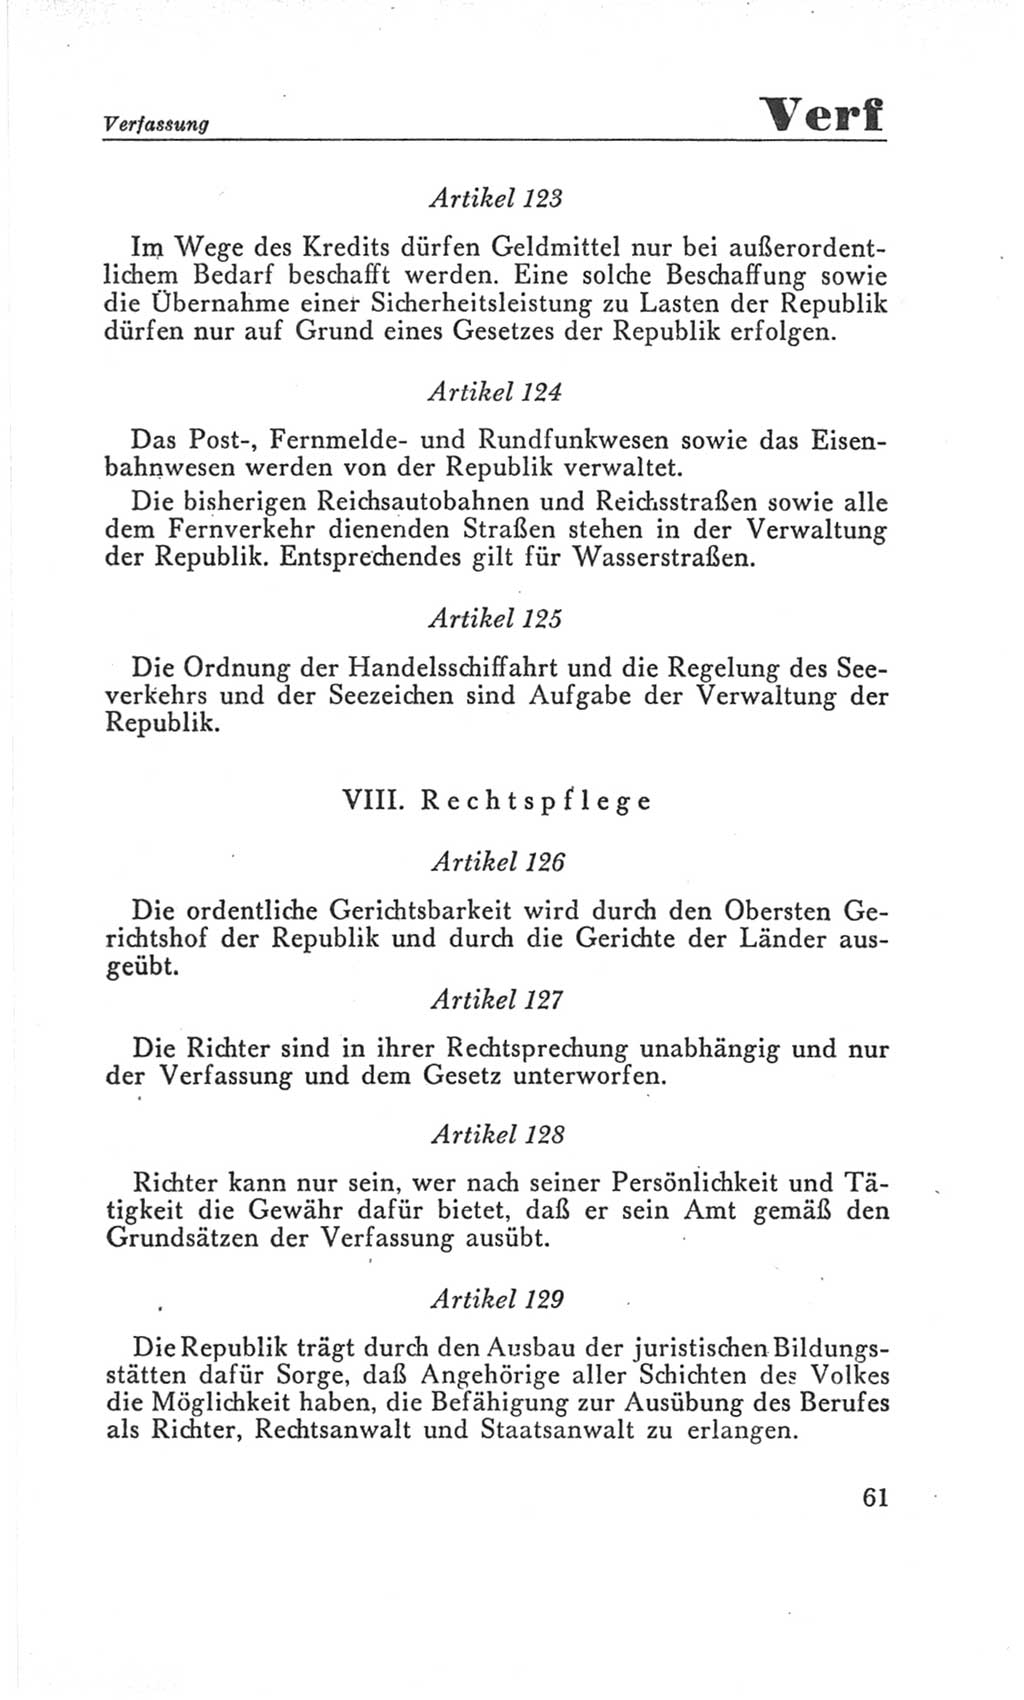 Handbuch der Volkskammer (VK) der Deutschen Demokratischen Republik (DDR), 3. Wahlperiode 1958-1963, Seite 61 (Hdb. VK. DDR 3. WP. 1958-1963, S. 61)